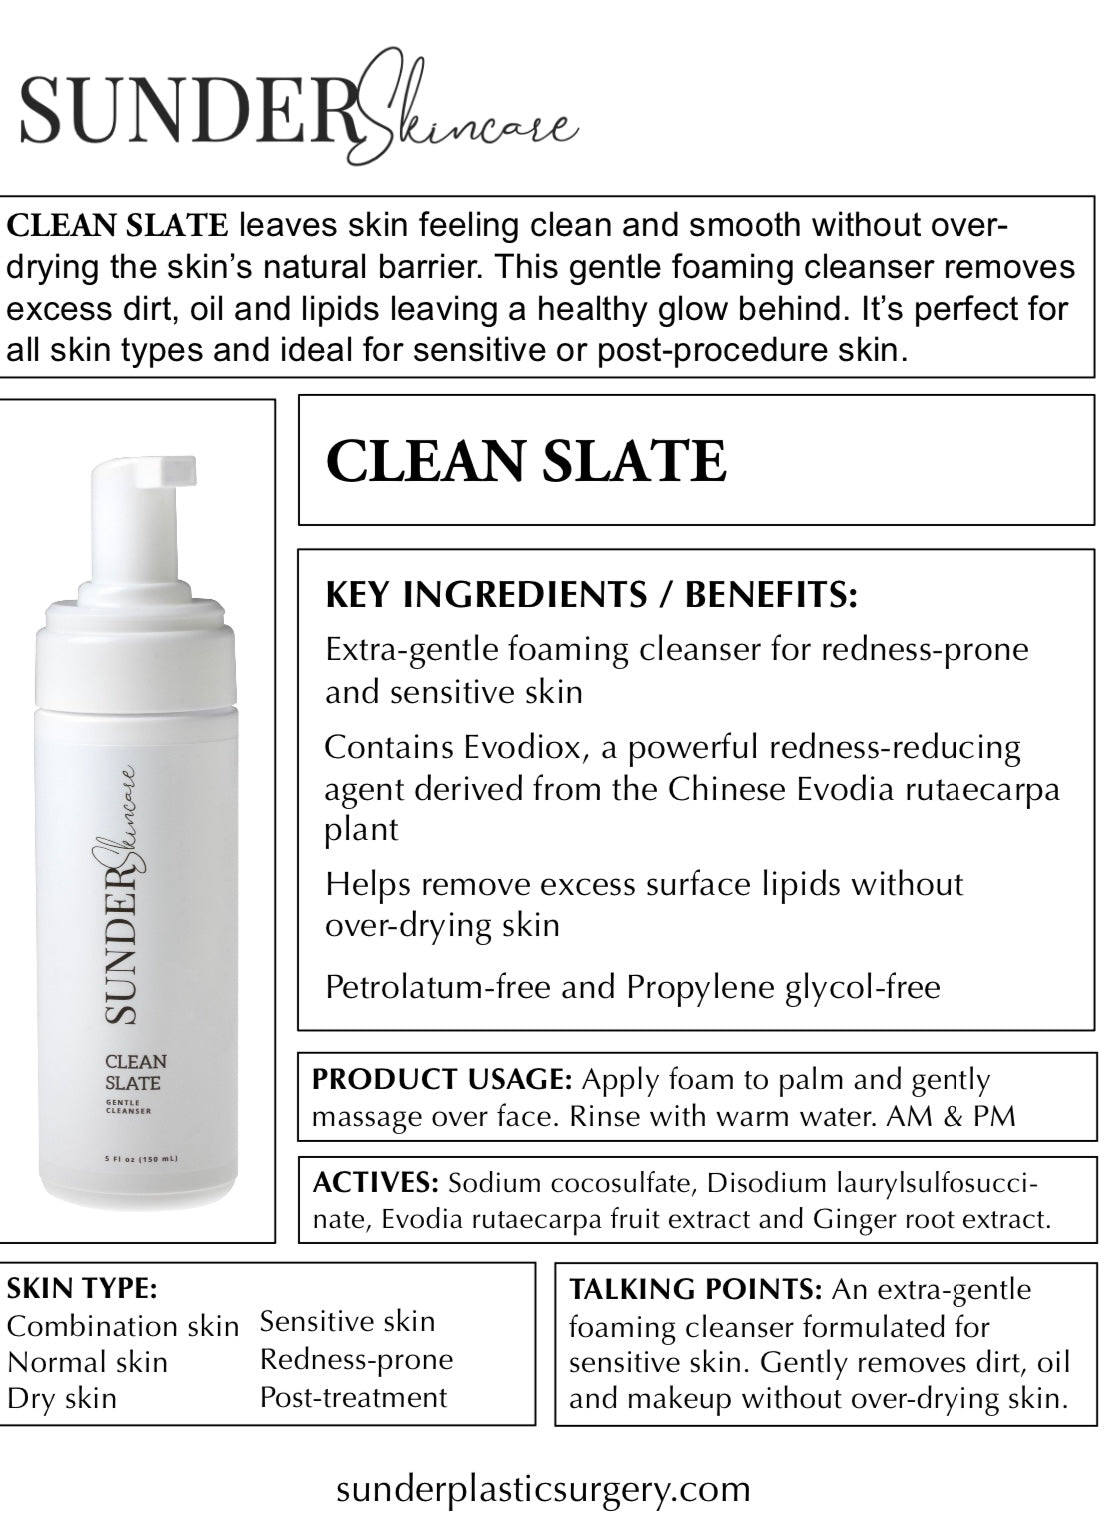 Clean Slate Gentle Cleansing Cream